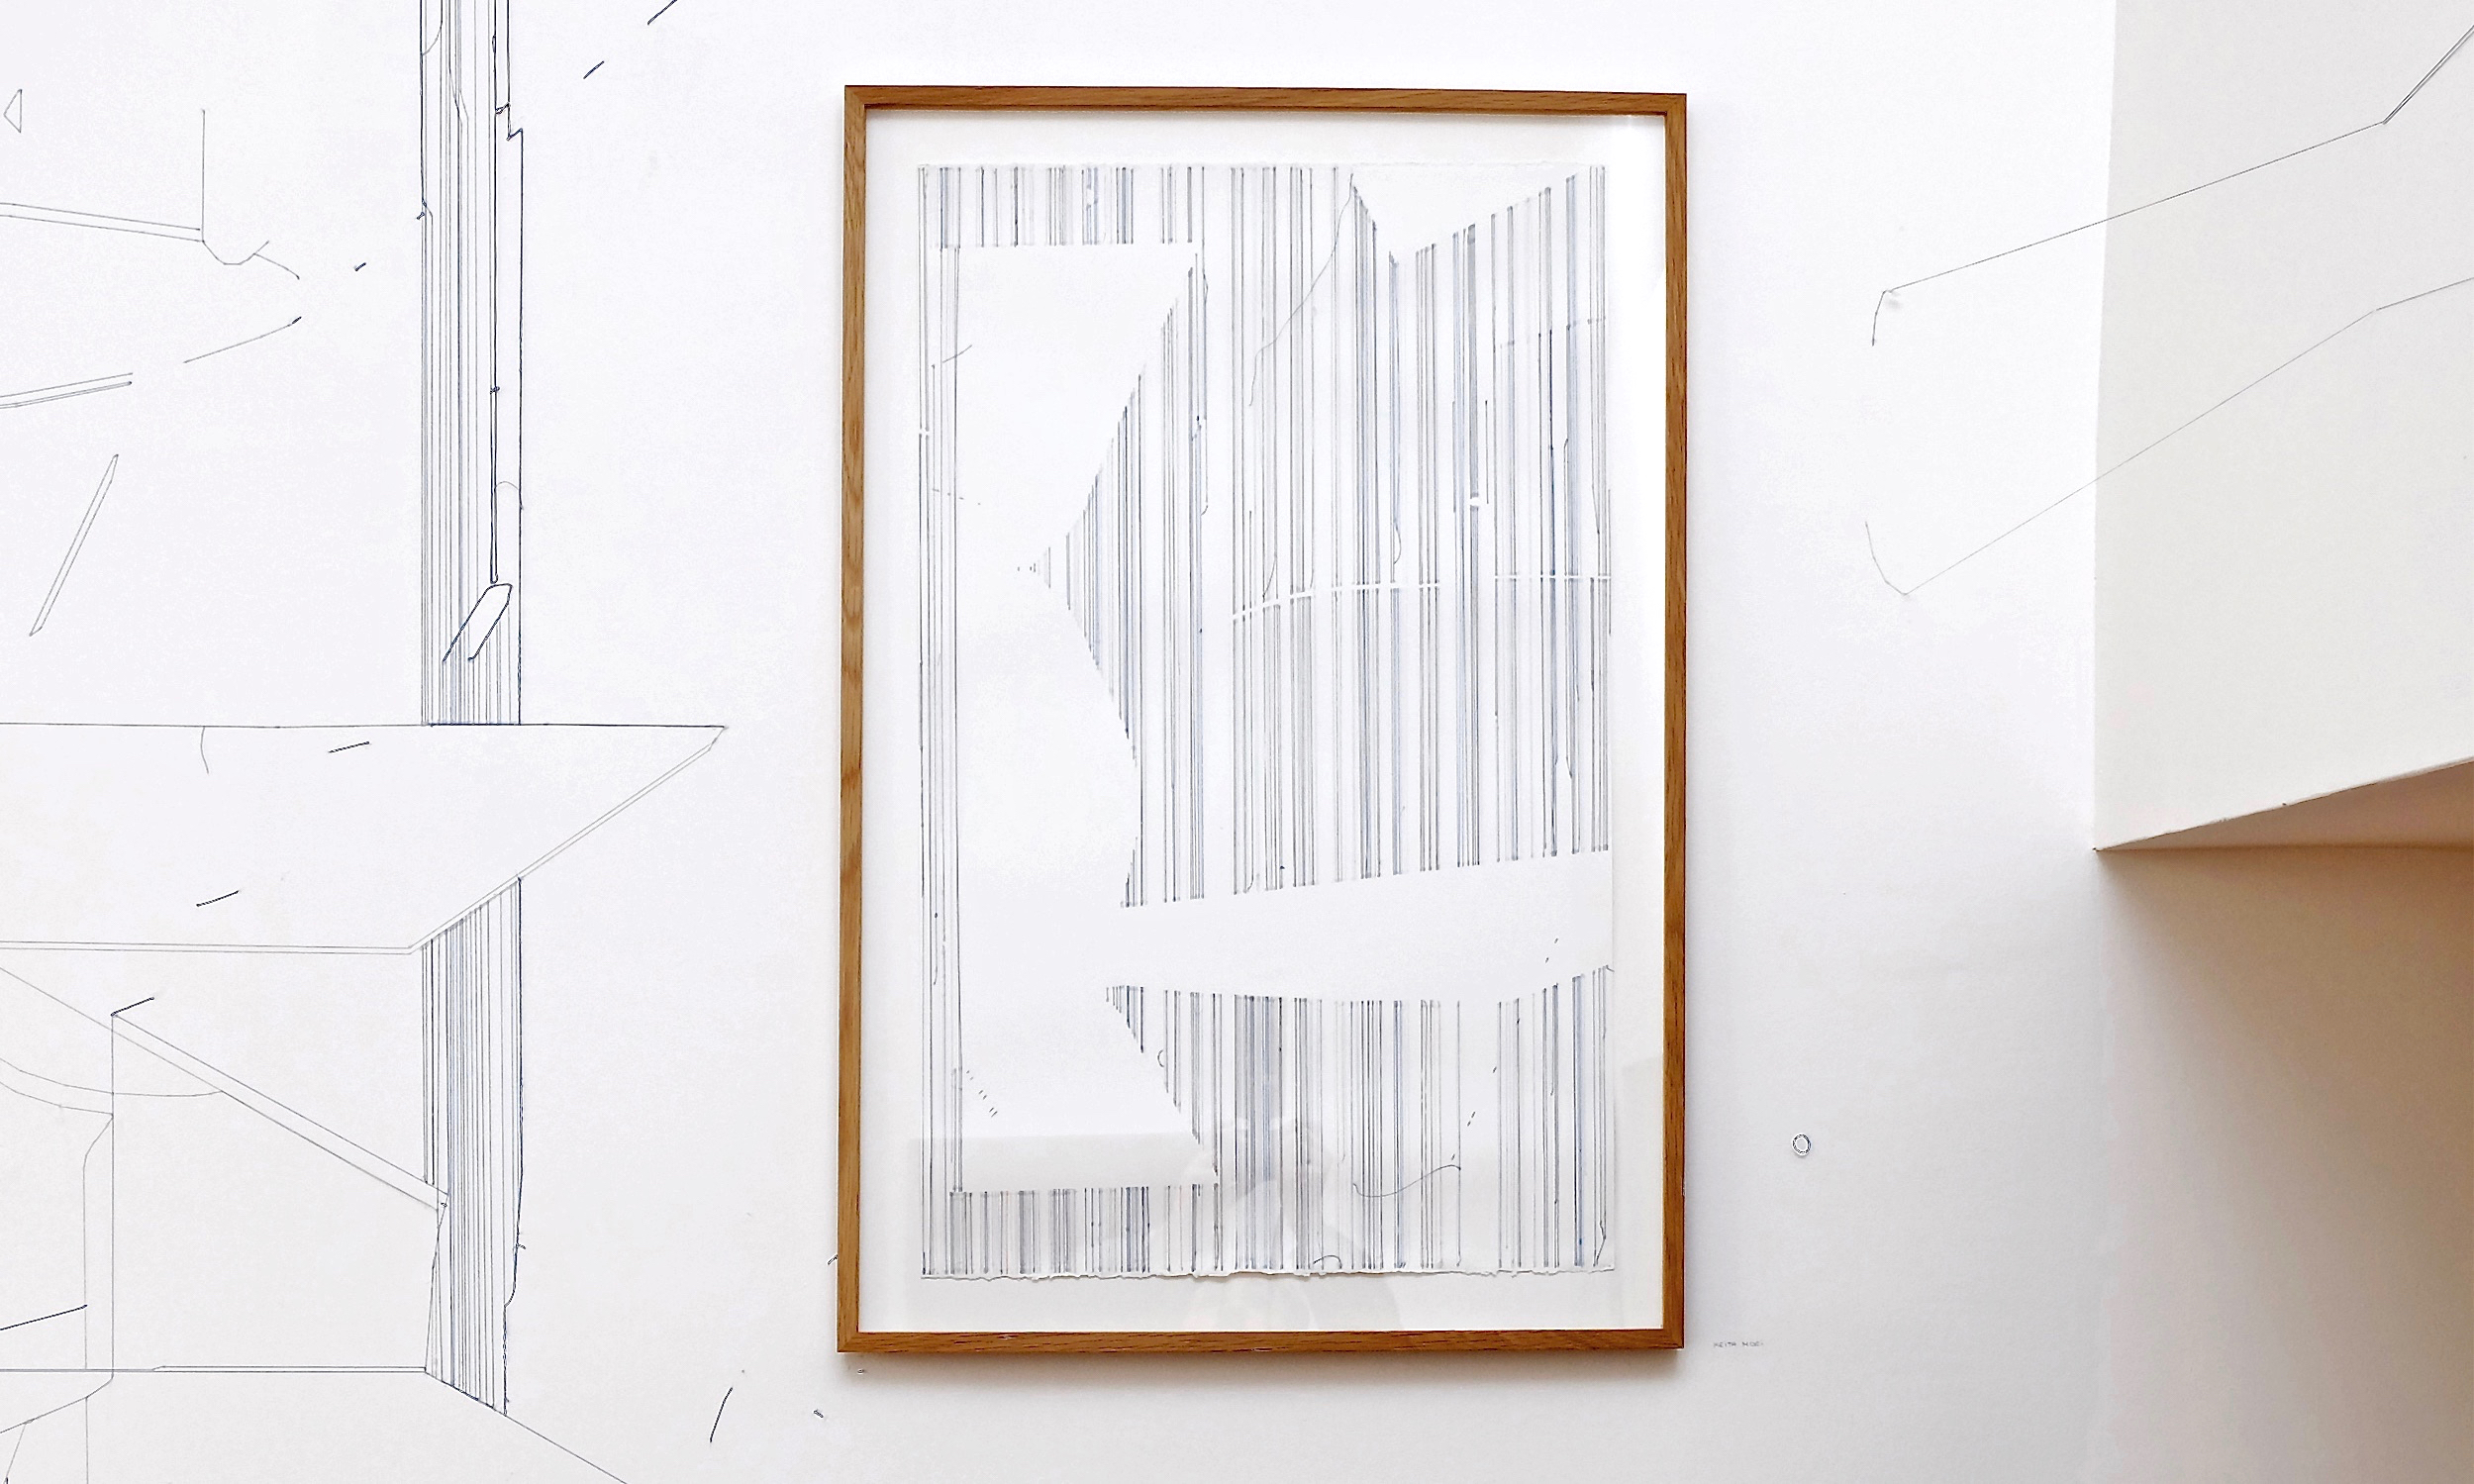   Keita Mori,  Bug Report (ocean) , 2017. Fil de coton et fil de soie sur papier, 76 cm x 50 cm  